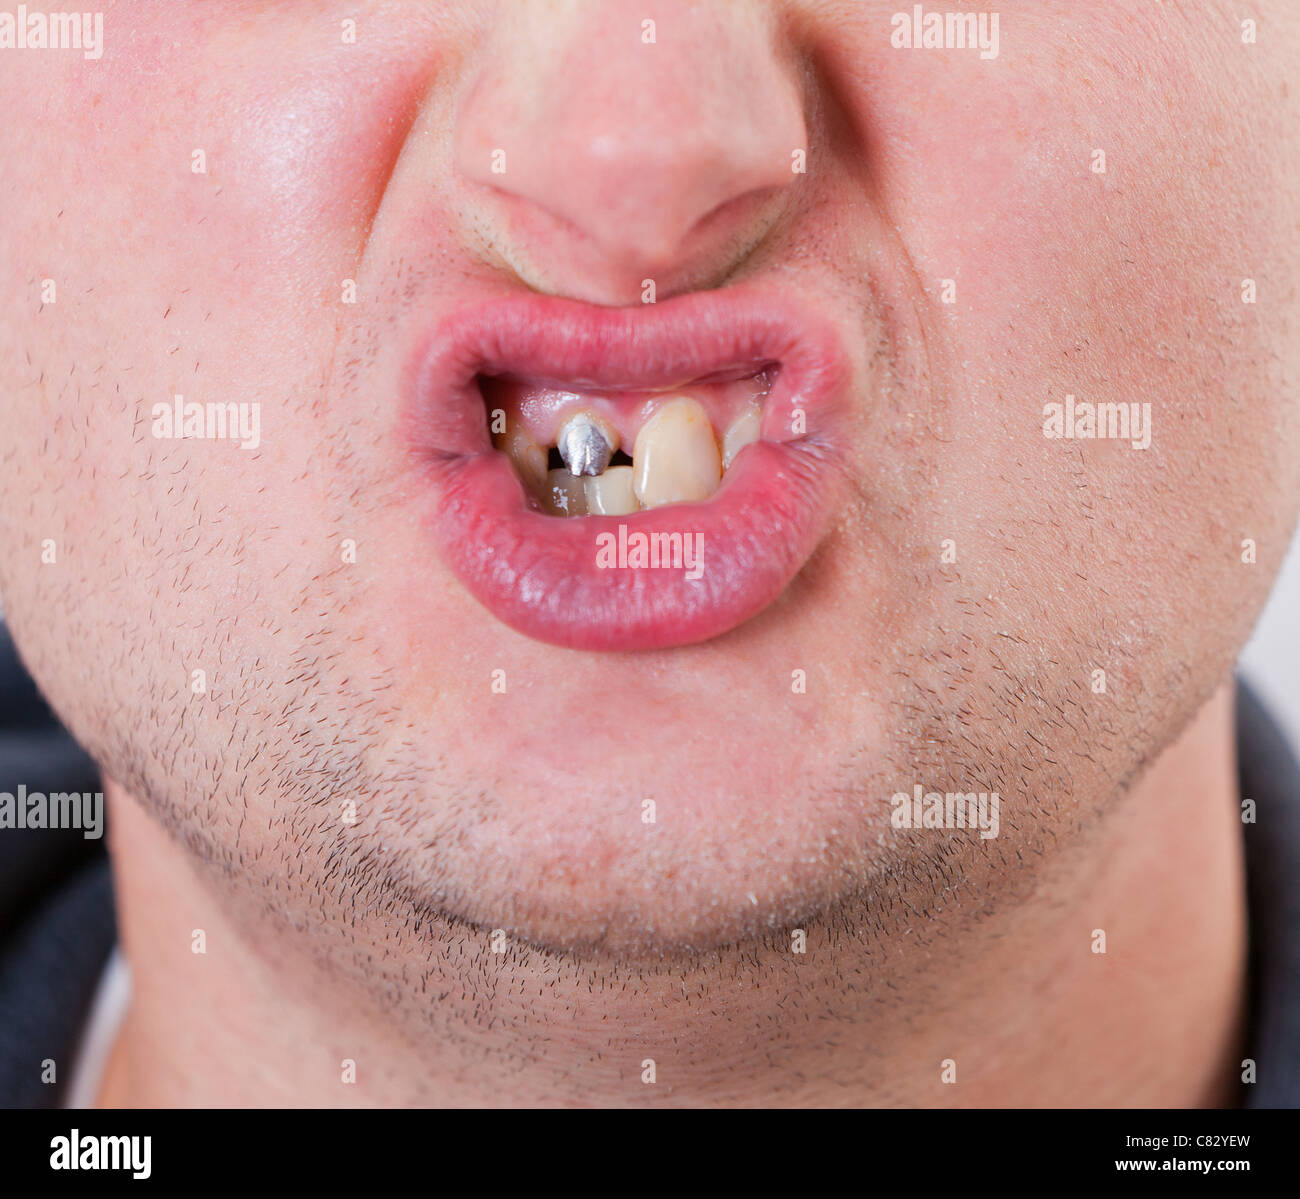 Junger Mann Gesicht mit Zahn-Stift im Mund Stockfotografie - Alamy